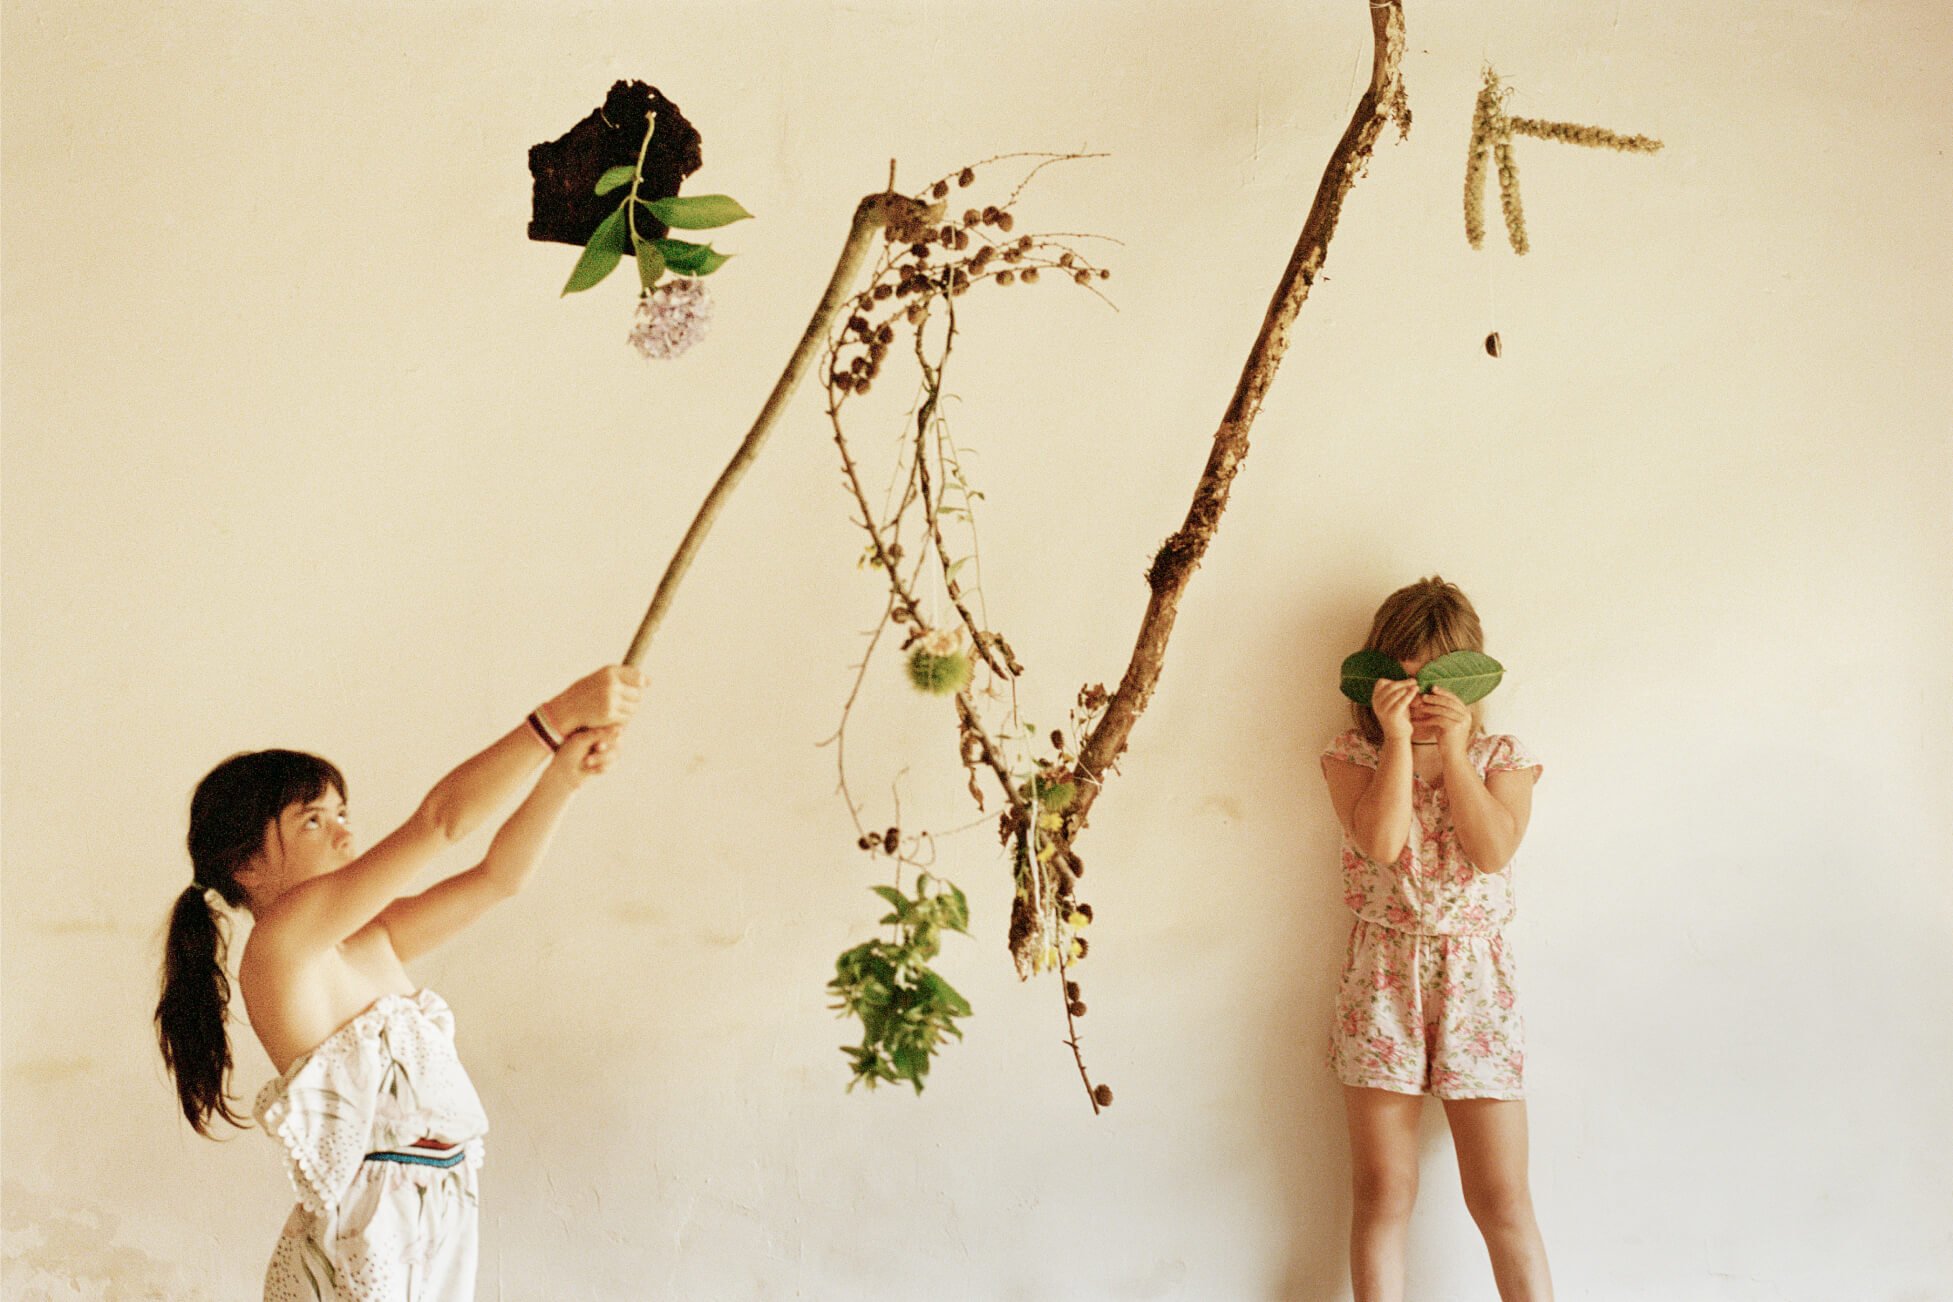 Dos niñas pequeñas juegan con ramas y hojas contra un fondo neutro.